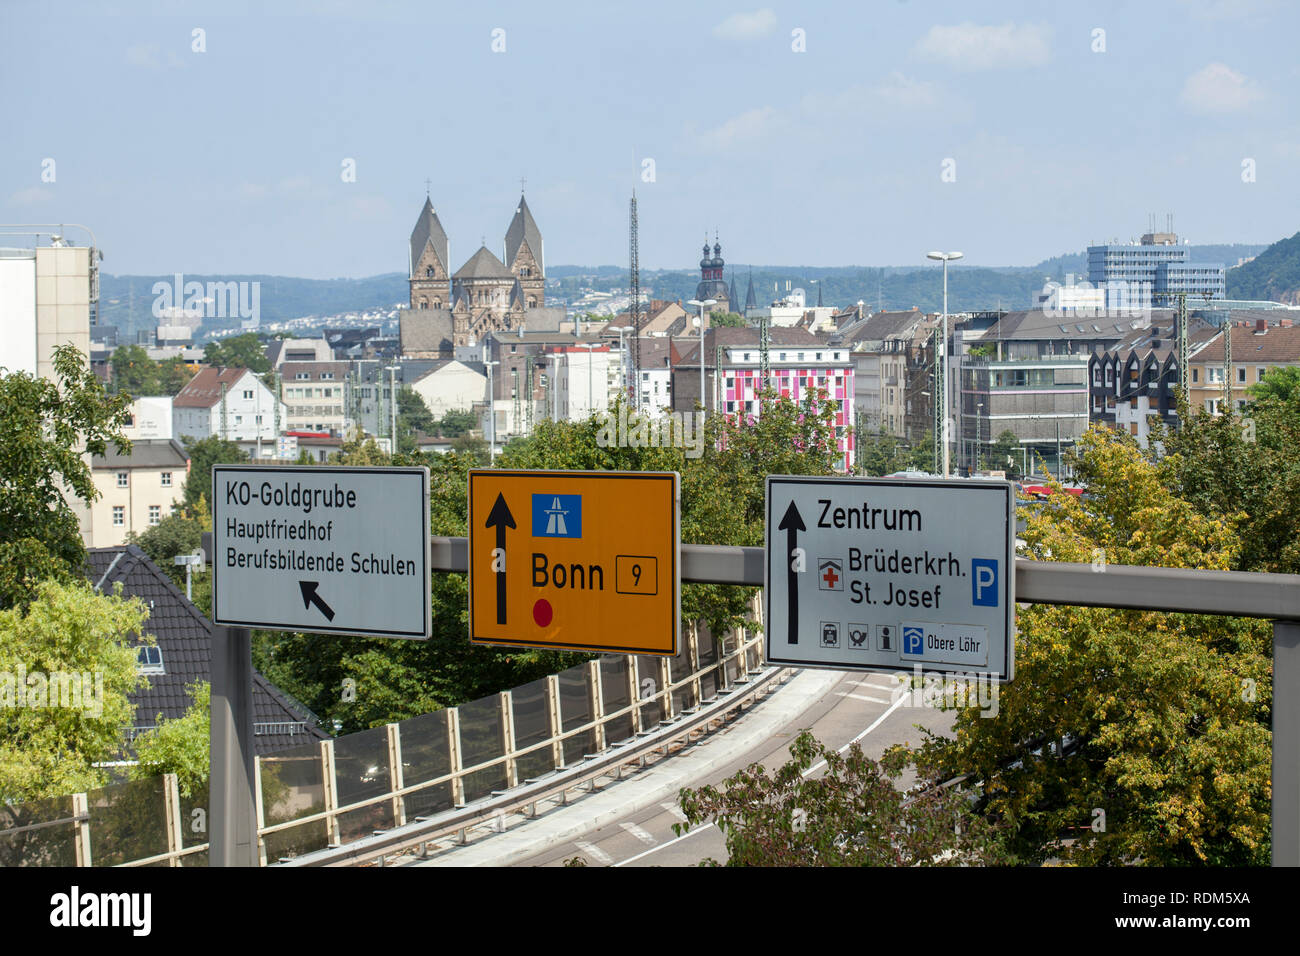 Schnellstraße mit Verkehrszeichen, hinten die Innenstadt, Koblenz, Rheinland-Pfalz, Deutschland Stock Photo